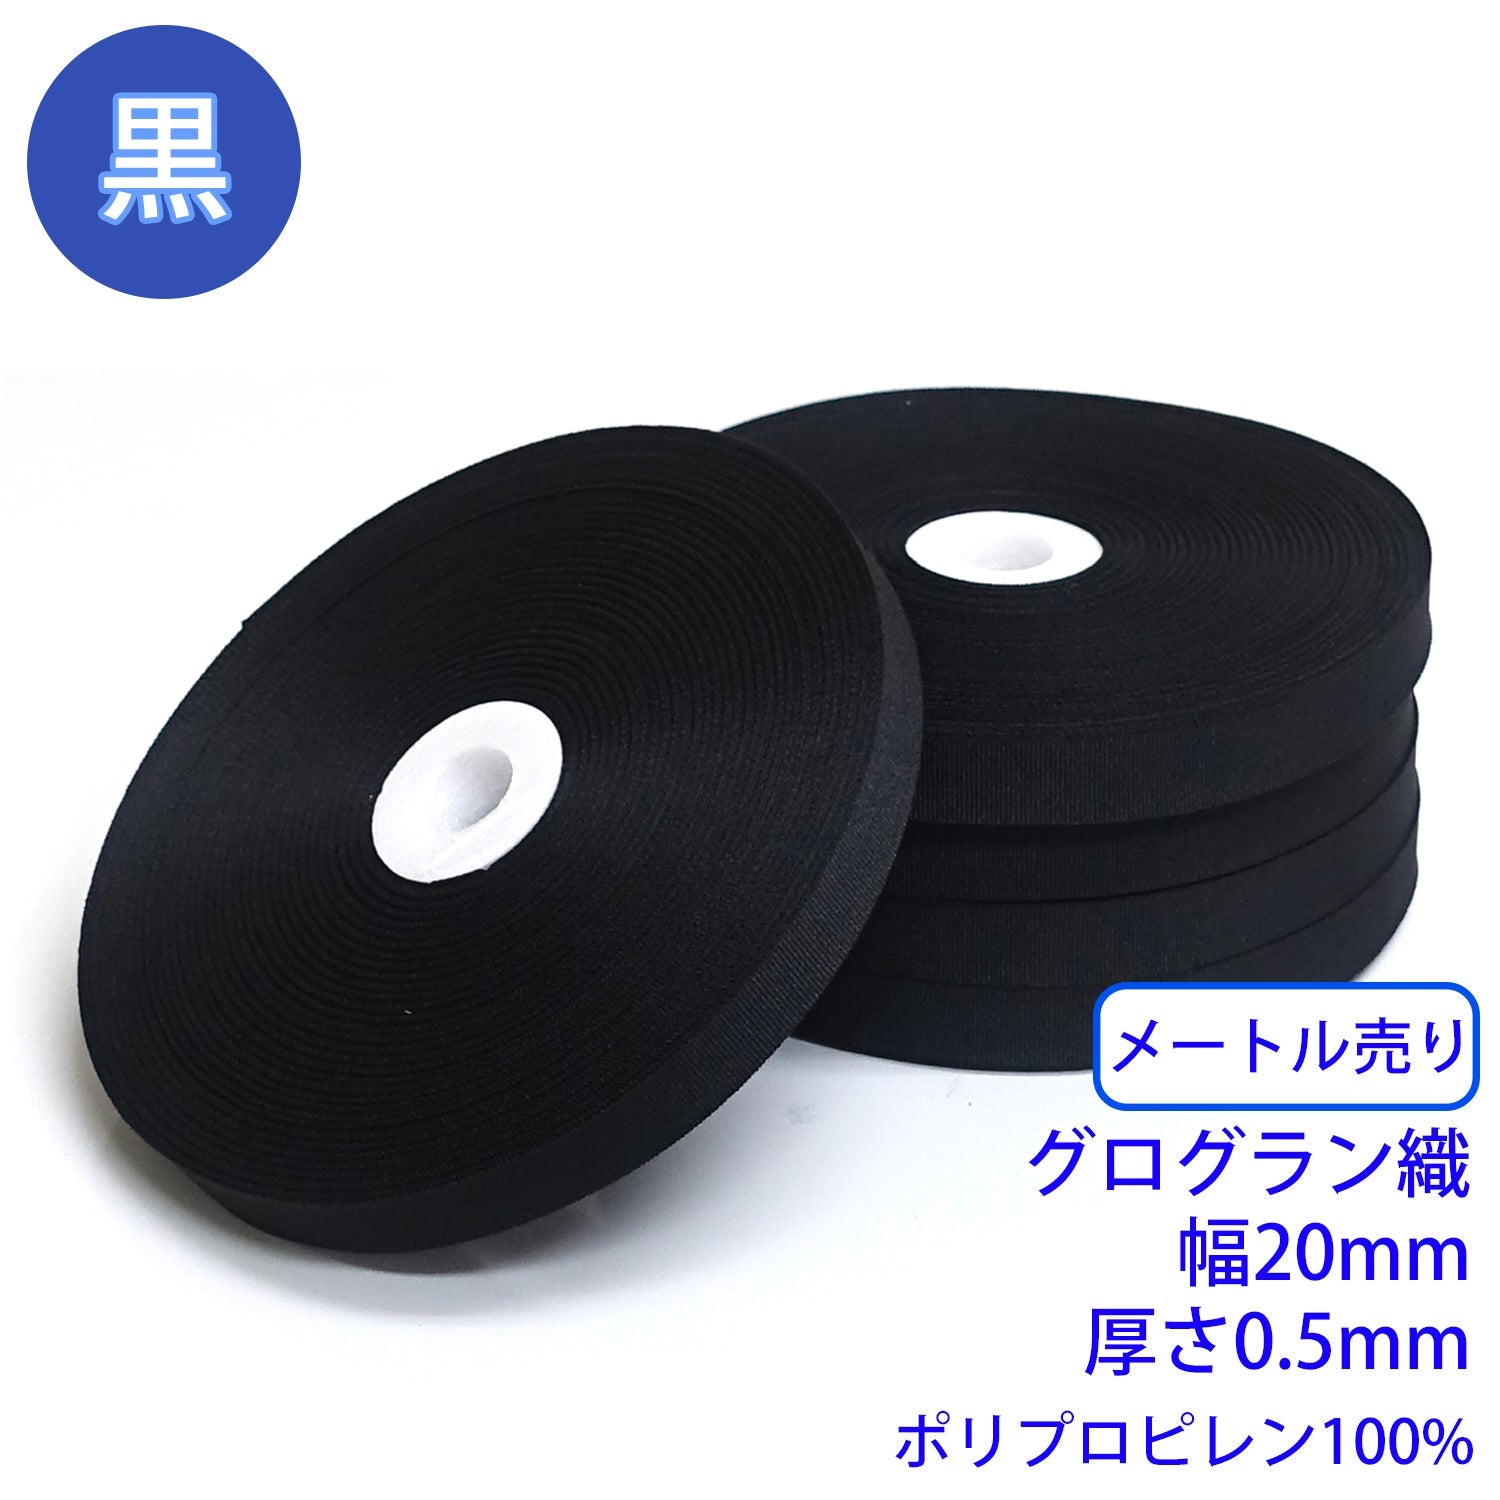 【メートル売り】 RPテープ グログラン織 黒のみ ポリプロピレン